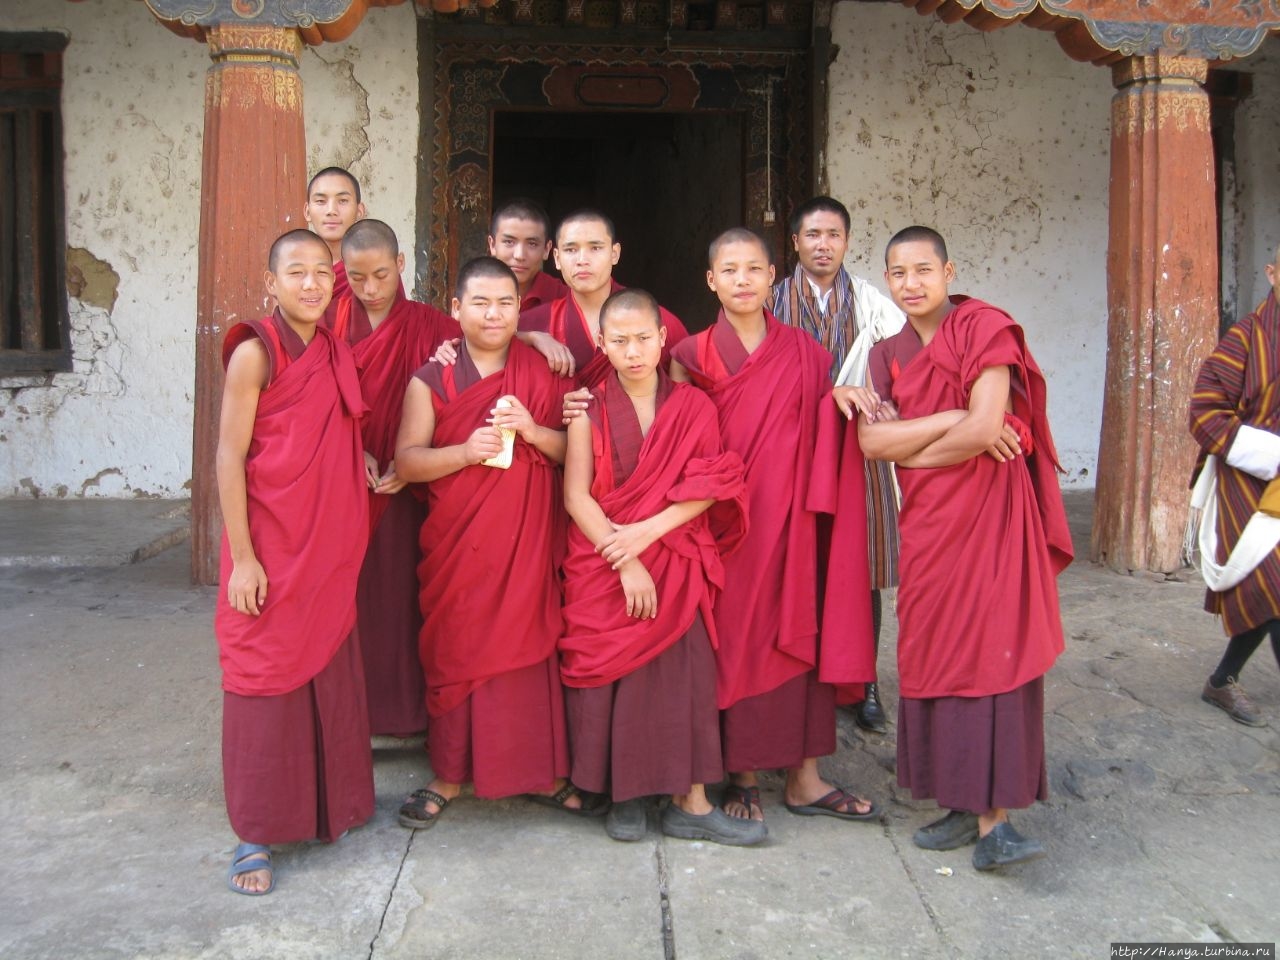 Крепость Вангди Пходранг Дзонг Вангди-Пходранг, Бутан